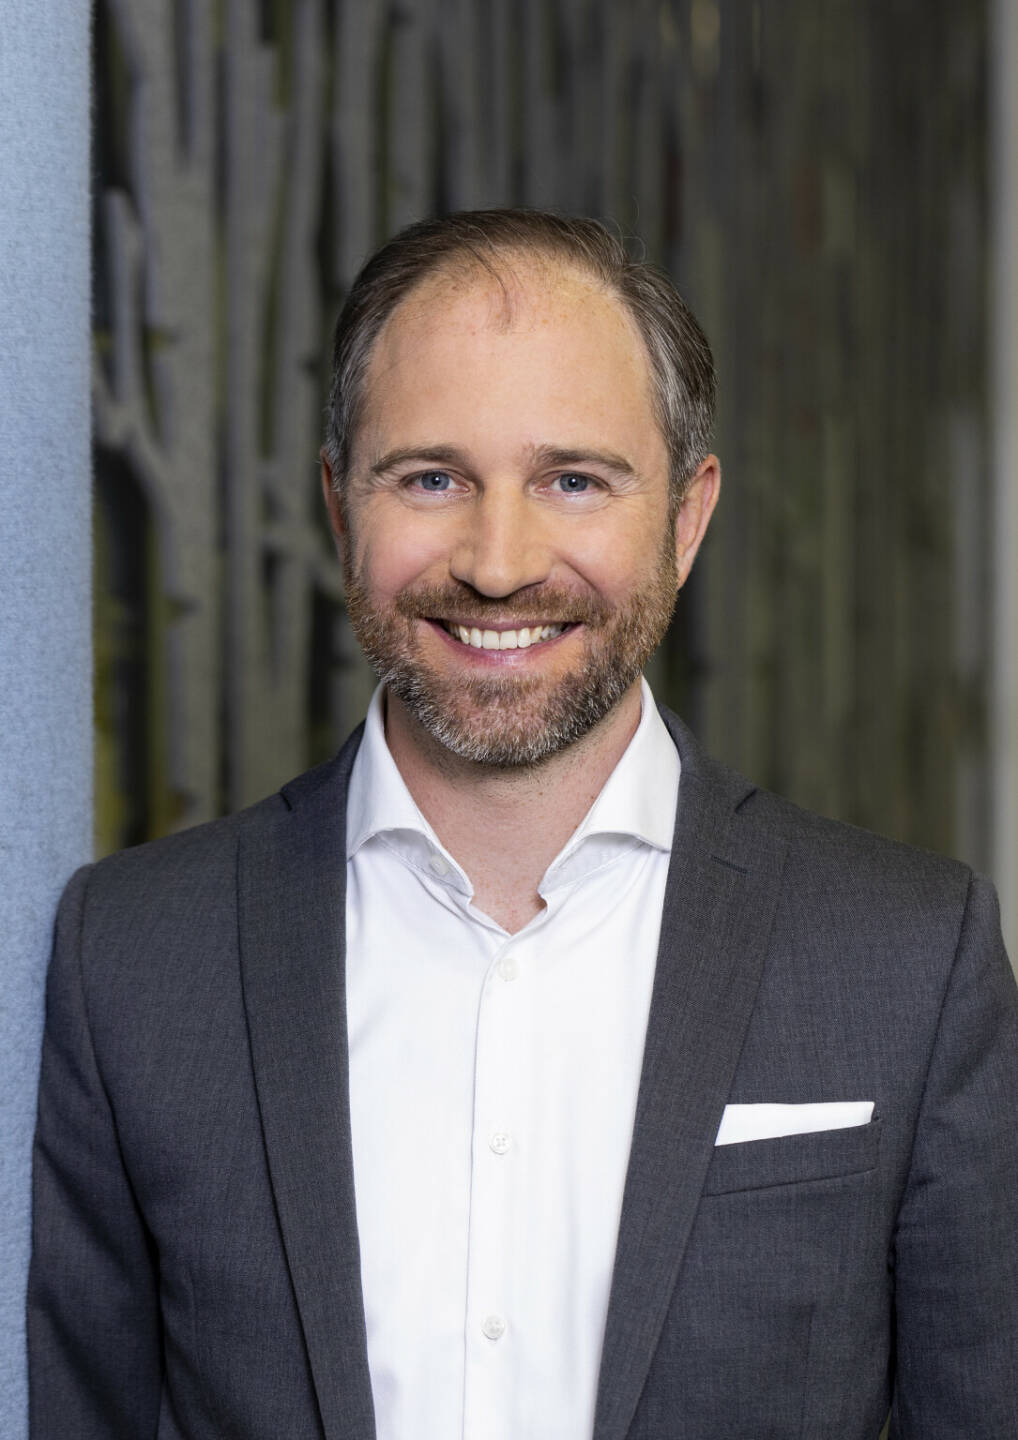 Neuer Director im Consulting bei Deloitte: Albrecht Rauchensteiner Credits Deloitte/feelimage